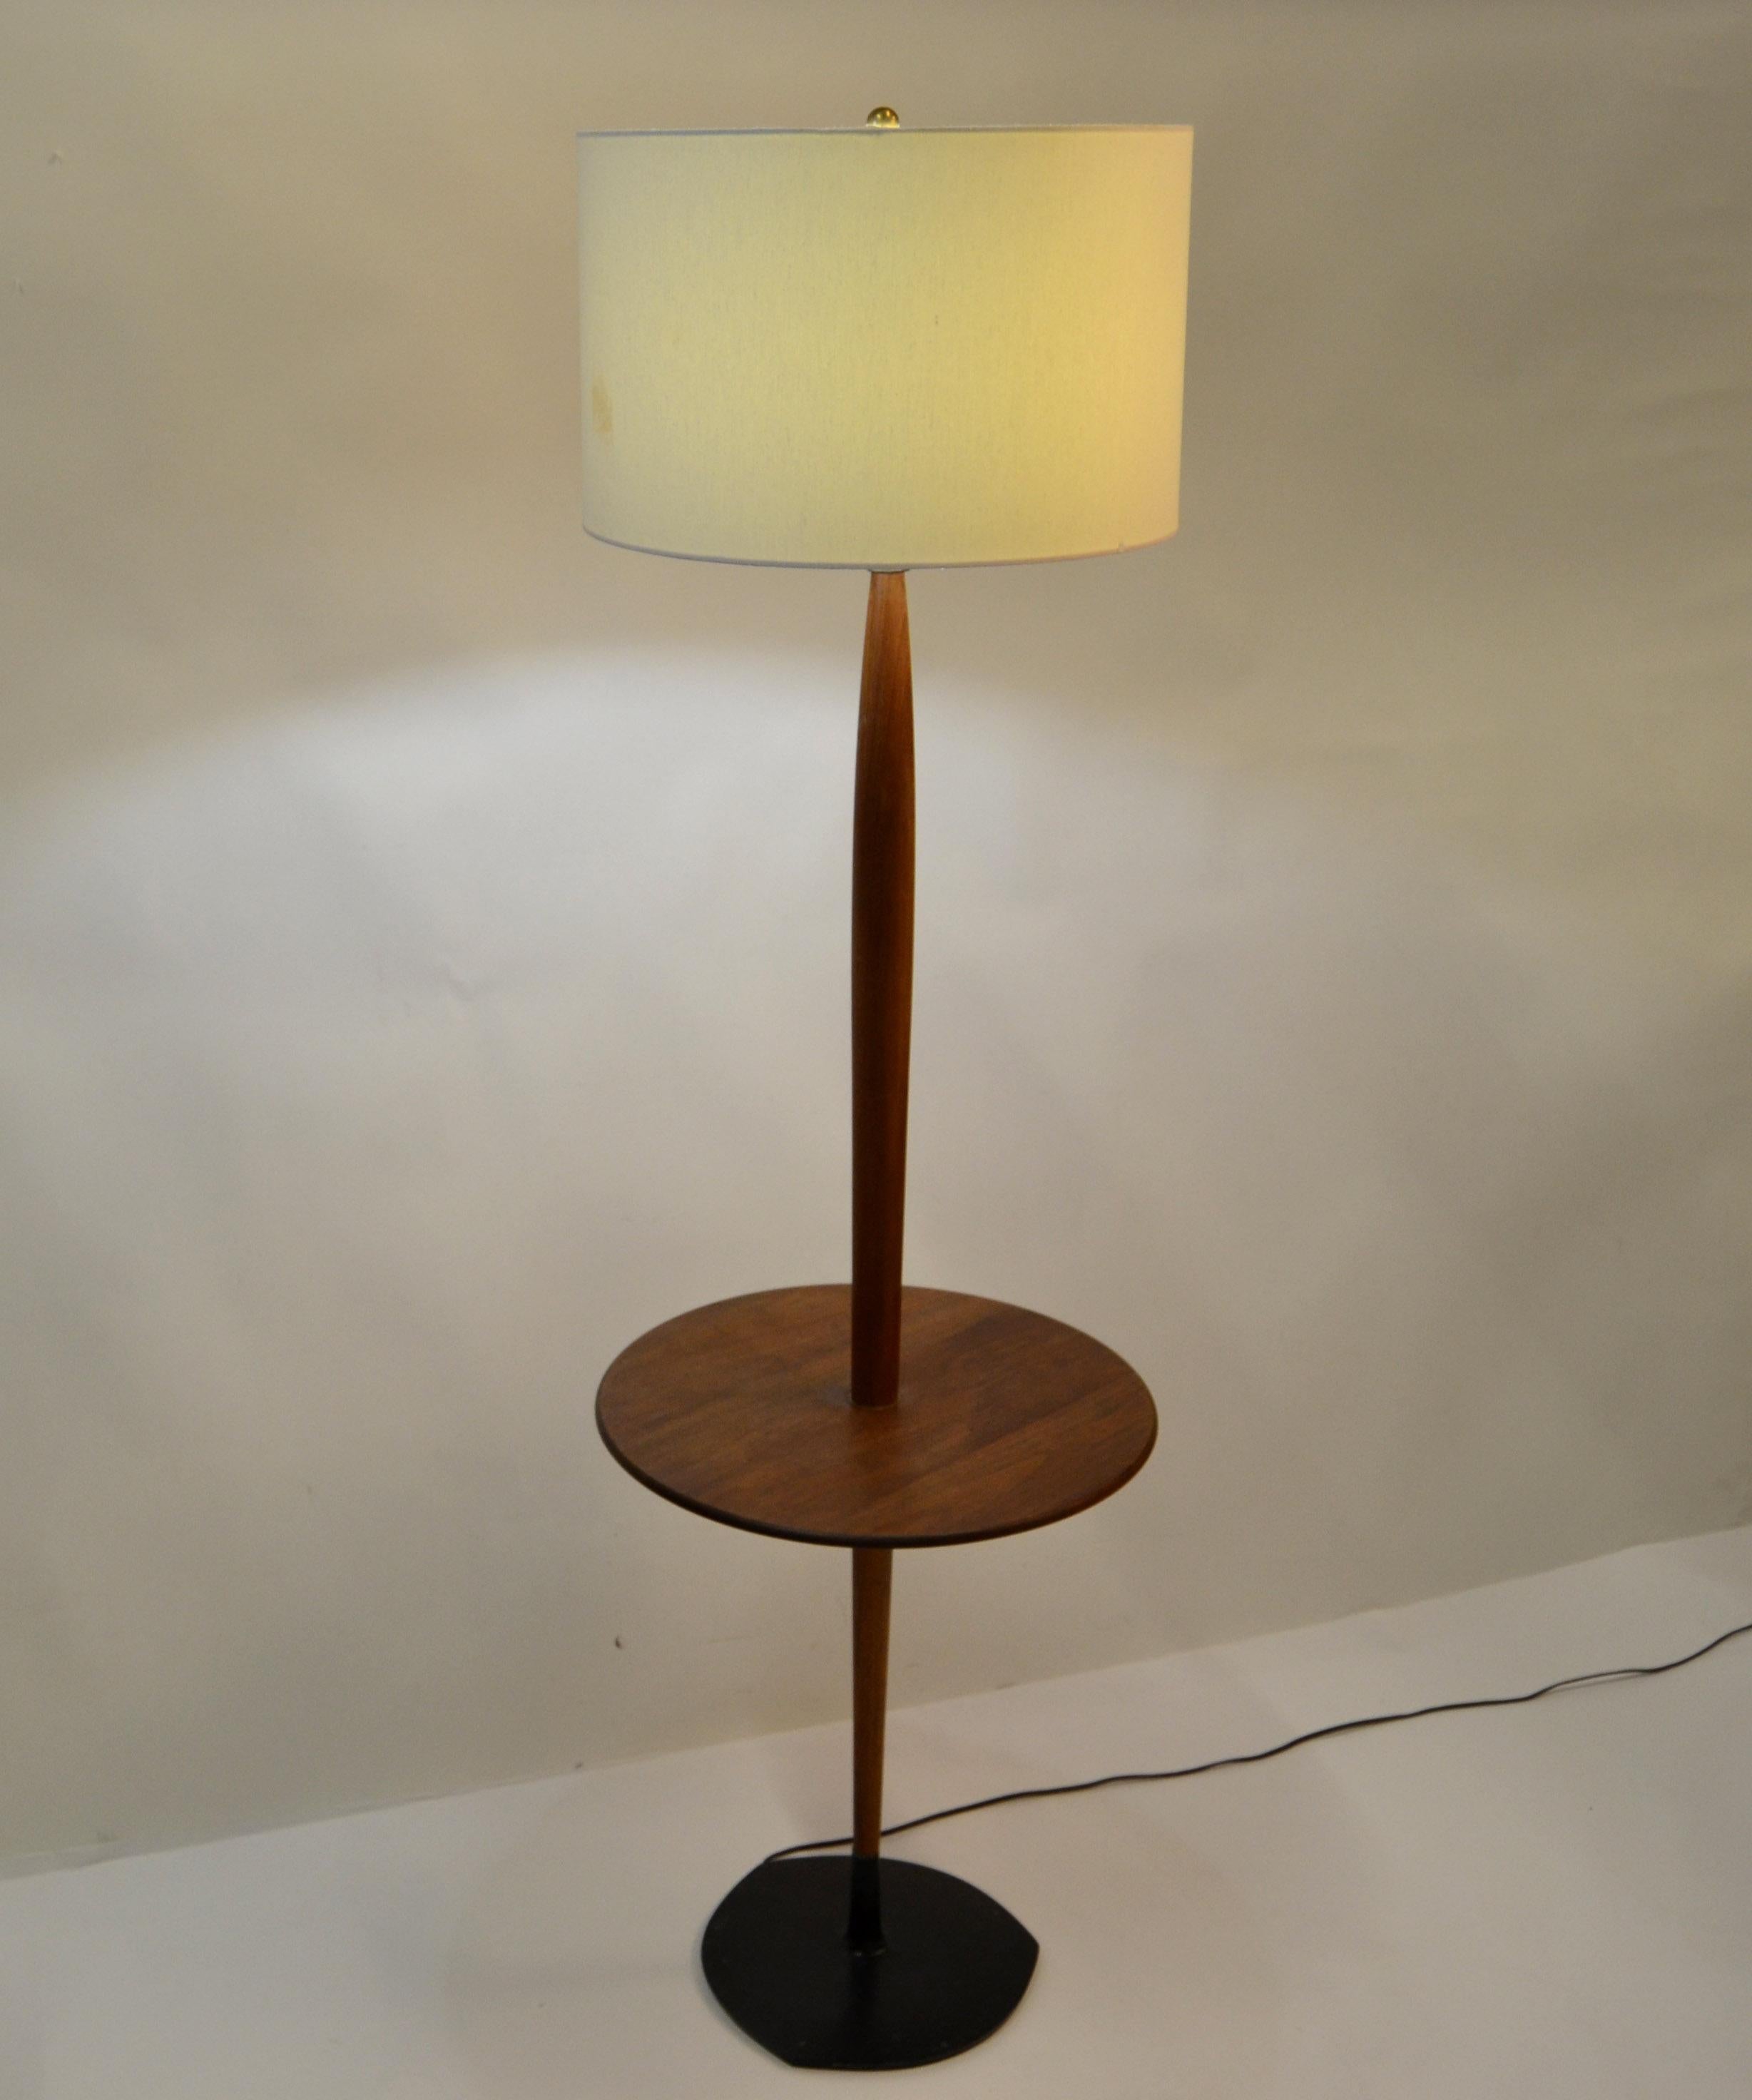 Stehlampe aus Nussbaumholz mit rundem Beistelltisch mit verjüngtem Stiel, der in den schwarzen, einzigartig geformten Stahlsockel eingesetzt ist, hergestellt von Laurel Lamp Company, ca. 1960er Jahre.
US Rewiring und nimmt 1 normale oder